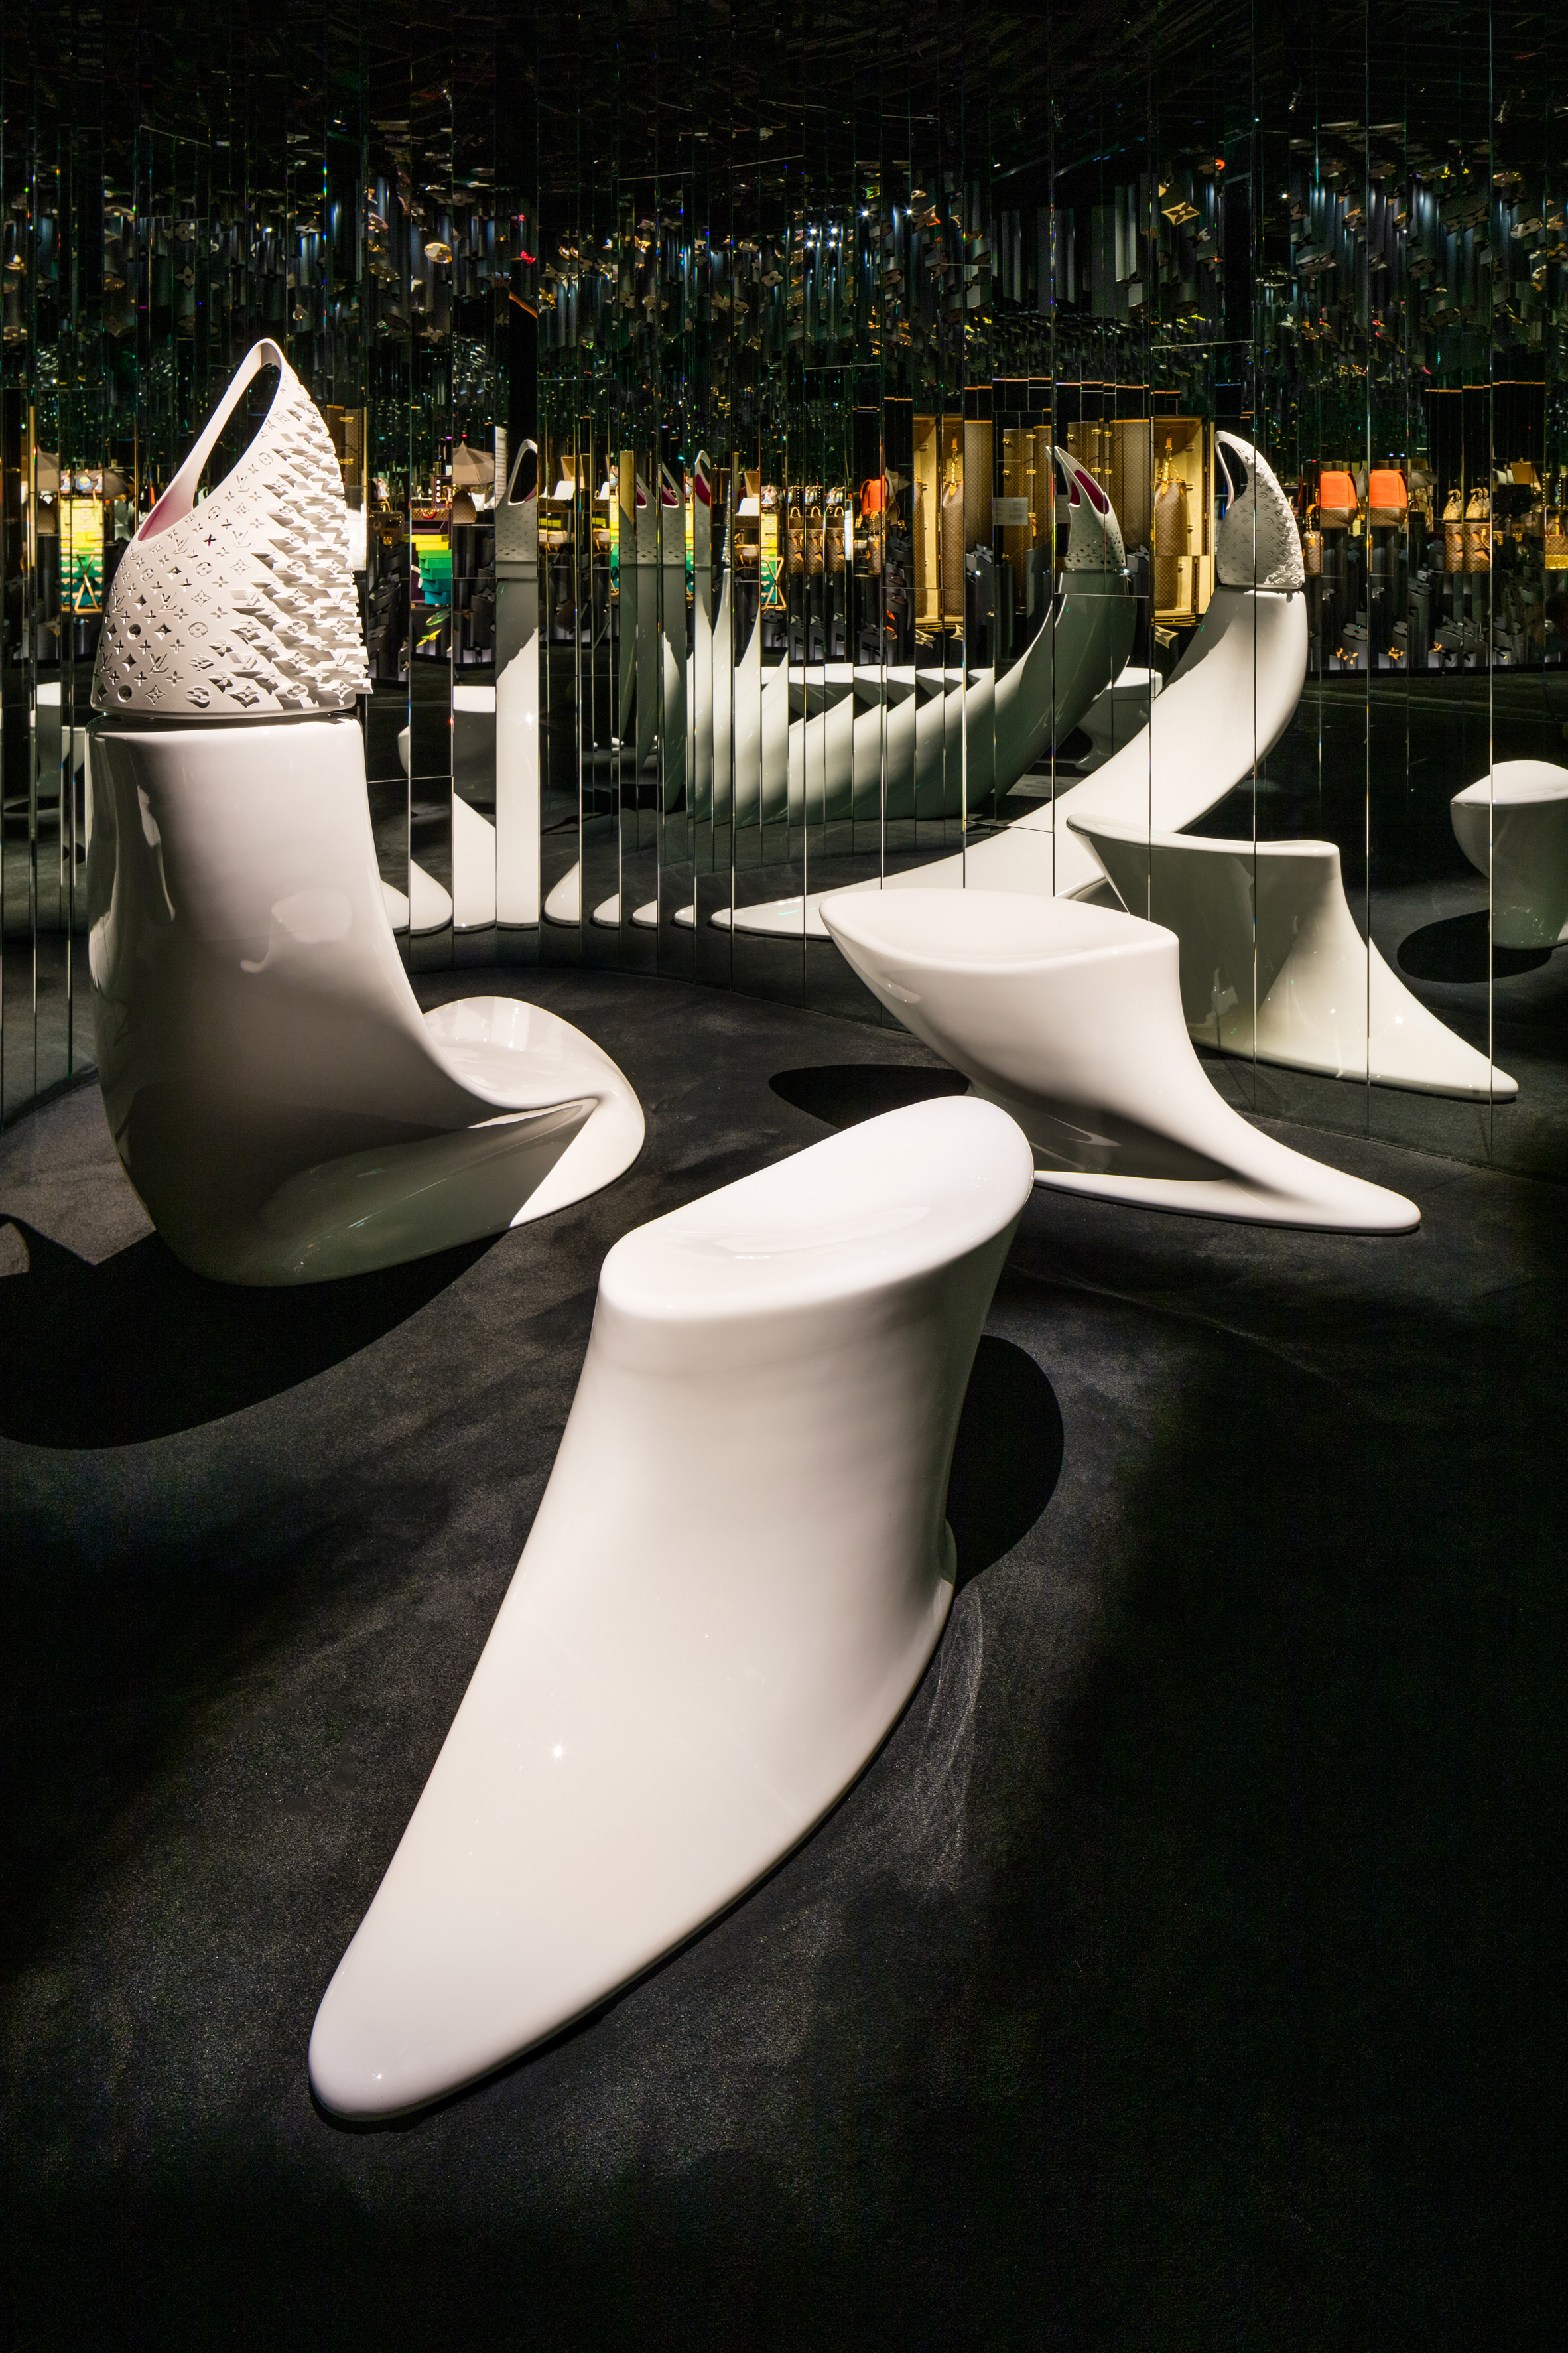 Louis Vuitton X Contemporary Artist Exhibition